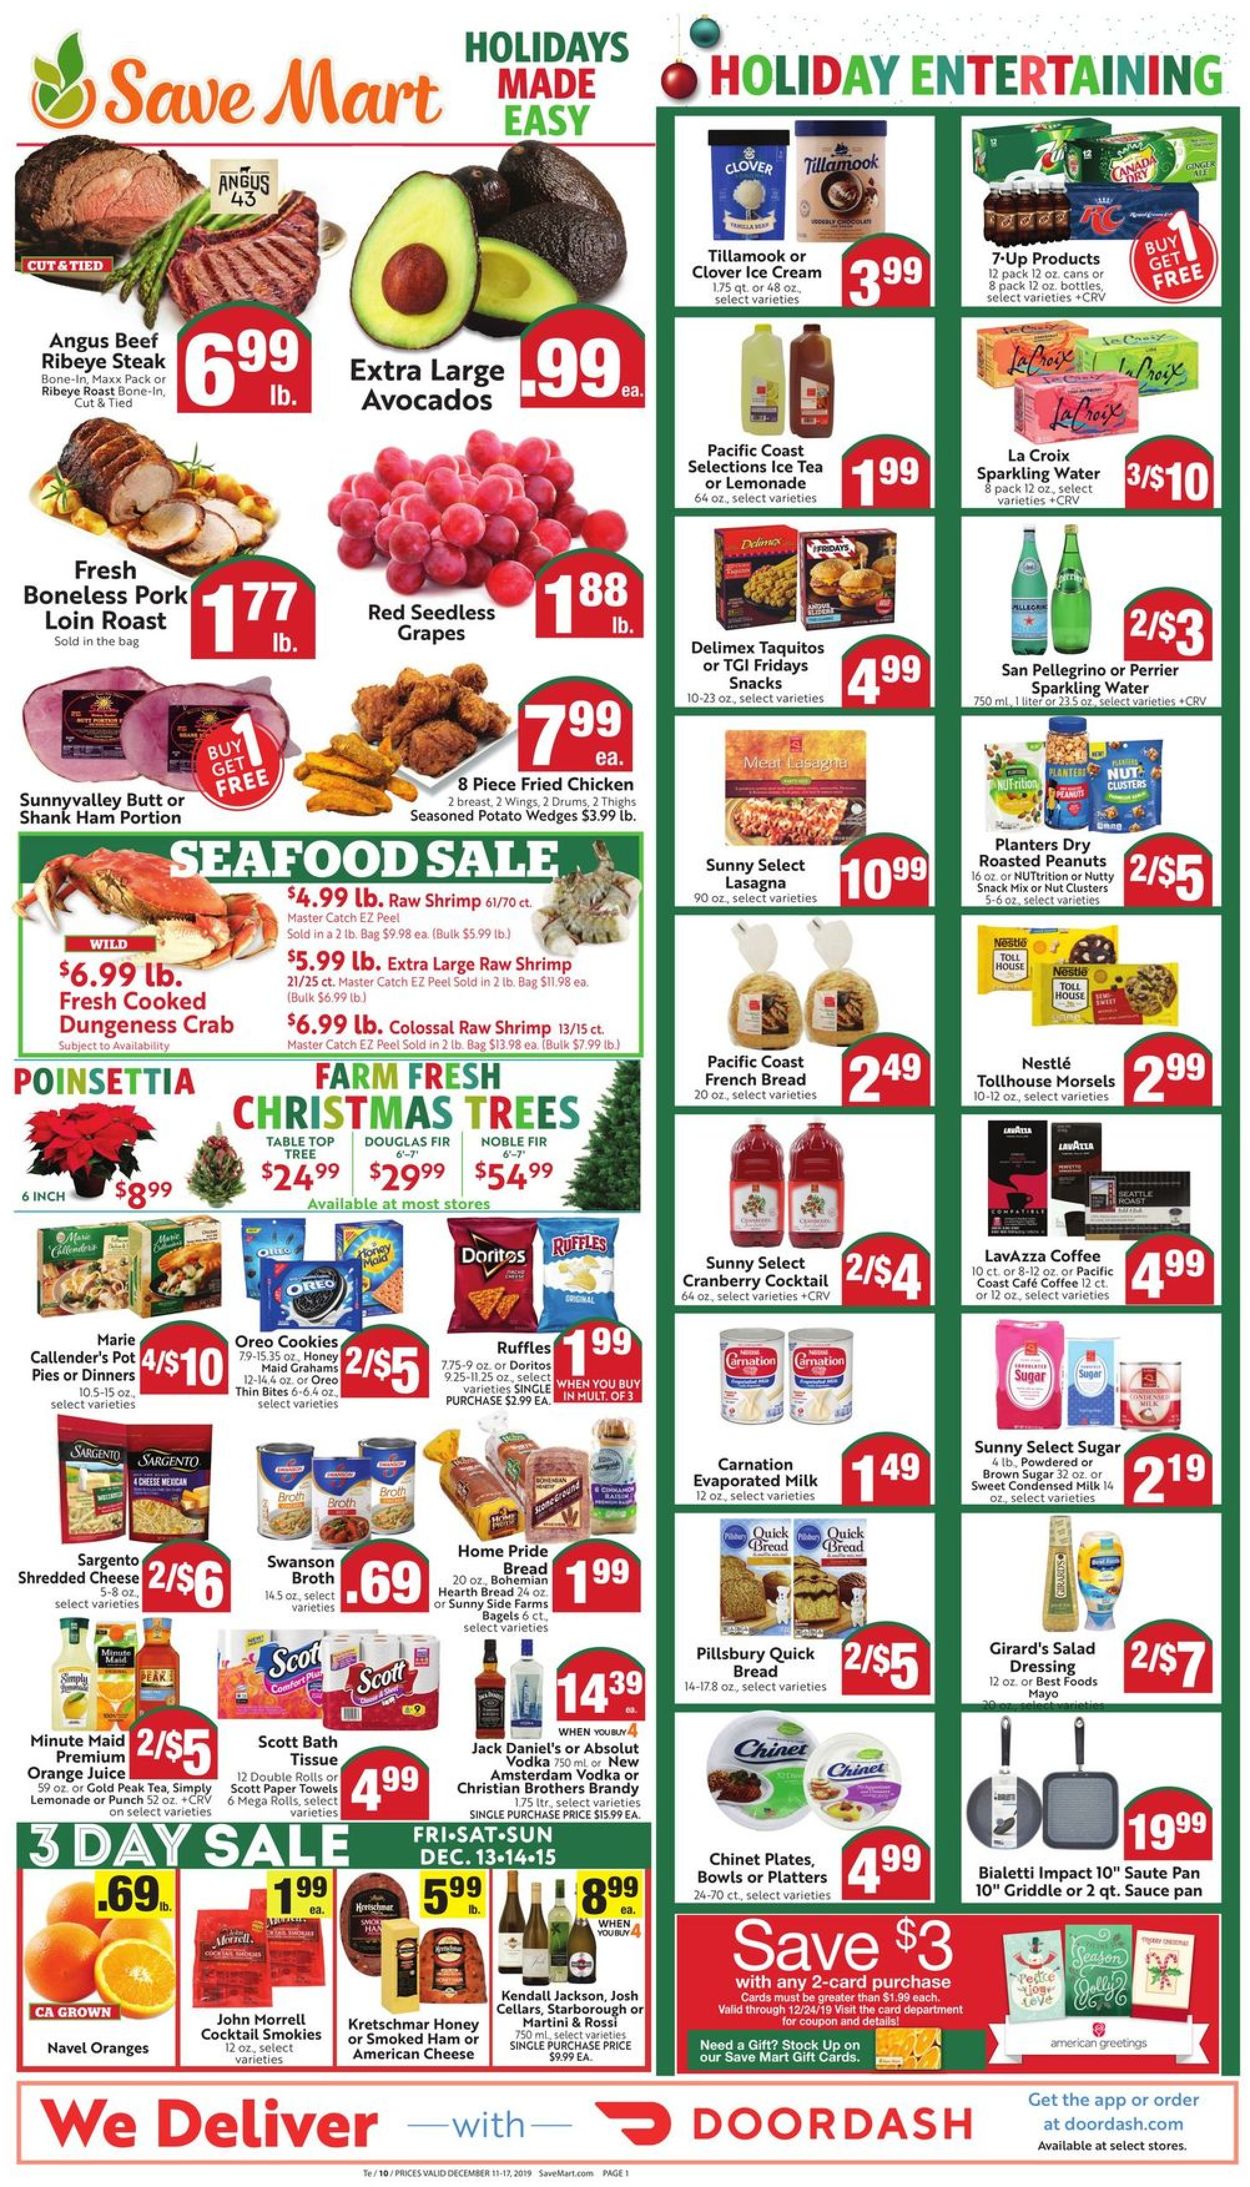 Save Mart - Holidays Ad 2019 Weekly Ad Circular - valid 12/11-12/17/2019